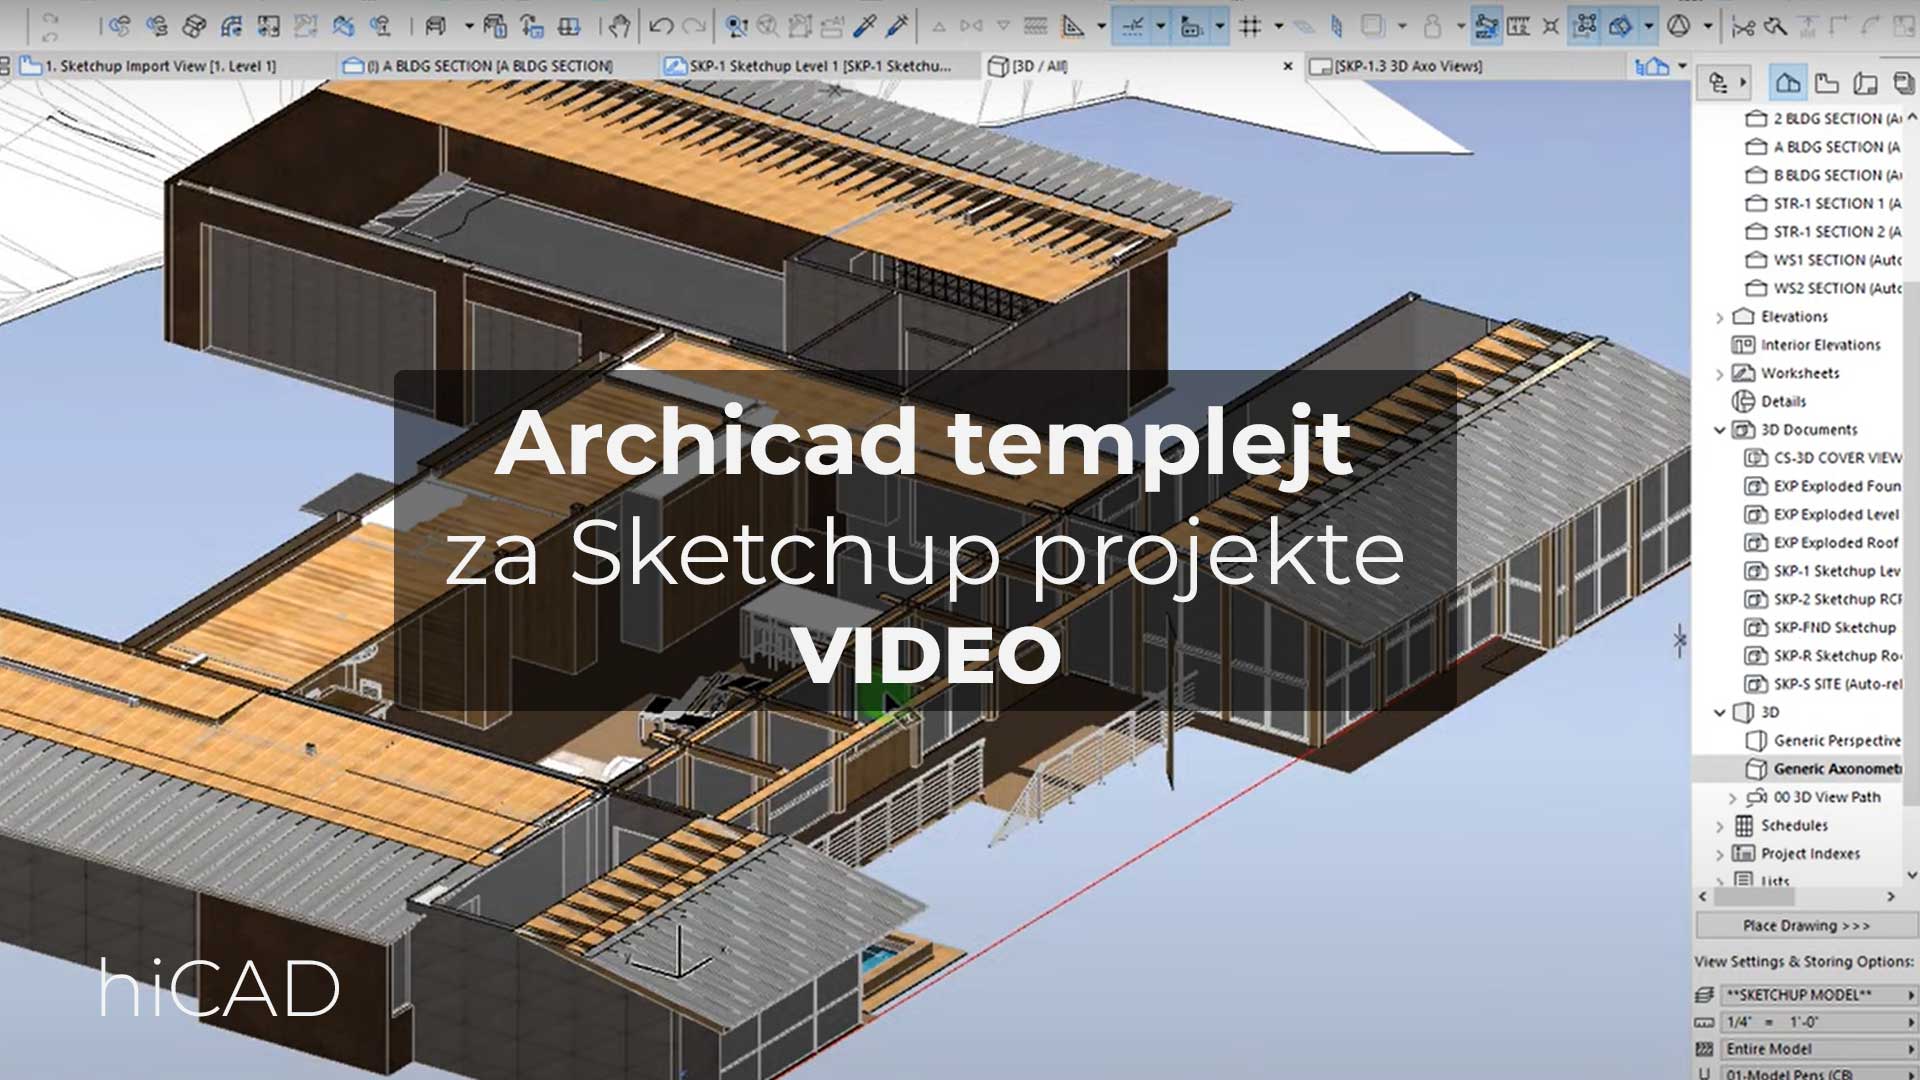 Archicad templejt za Sketchup projekat • 🎥 Video • hiCAD doo